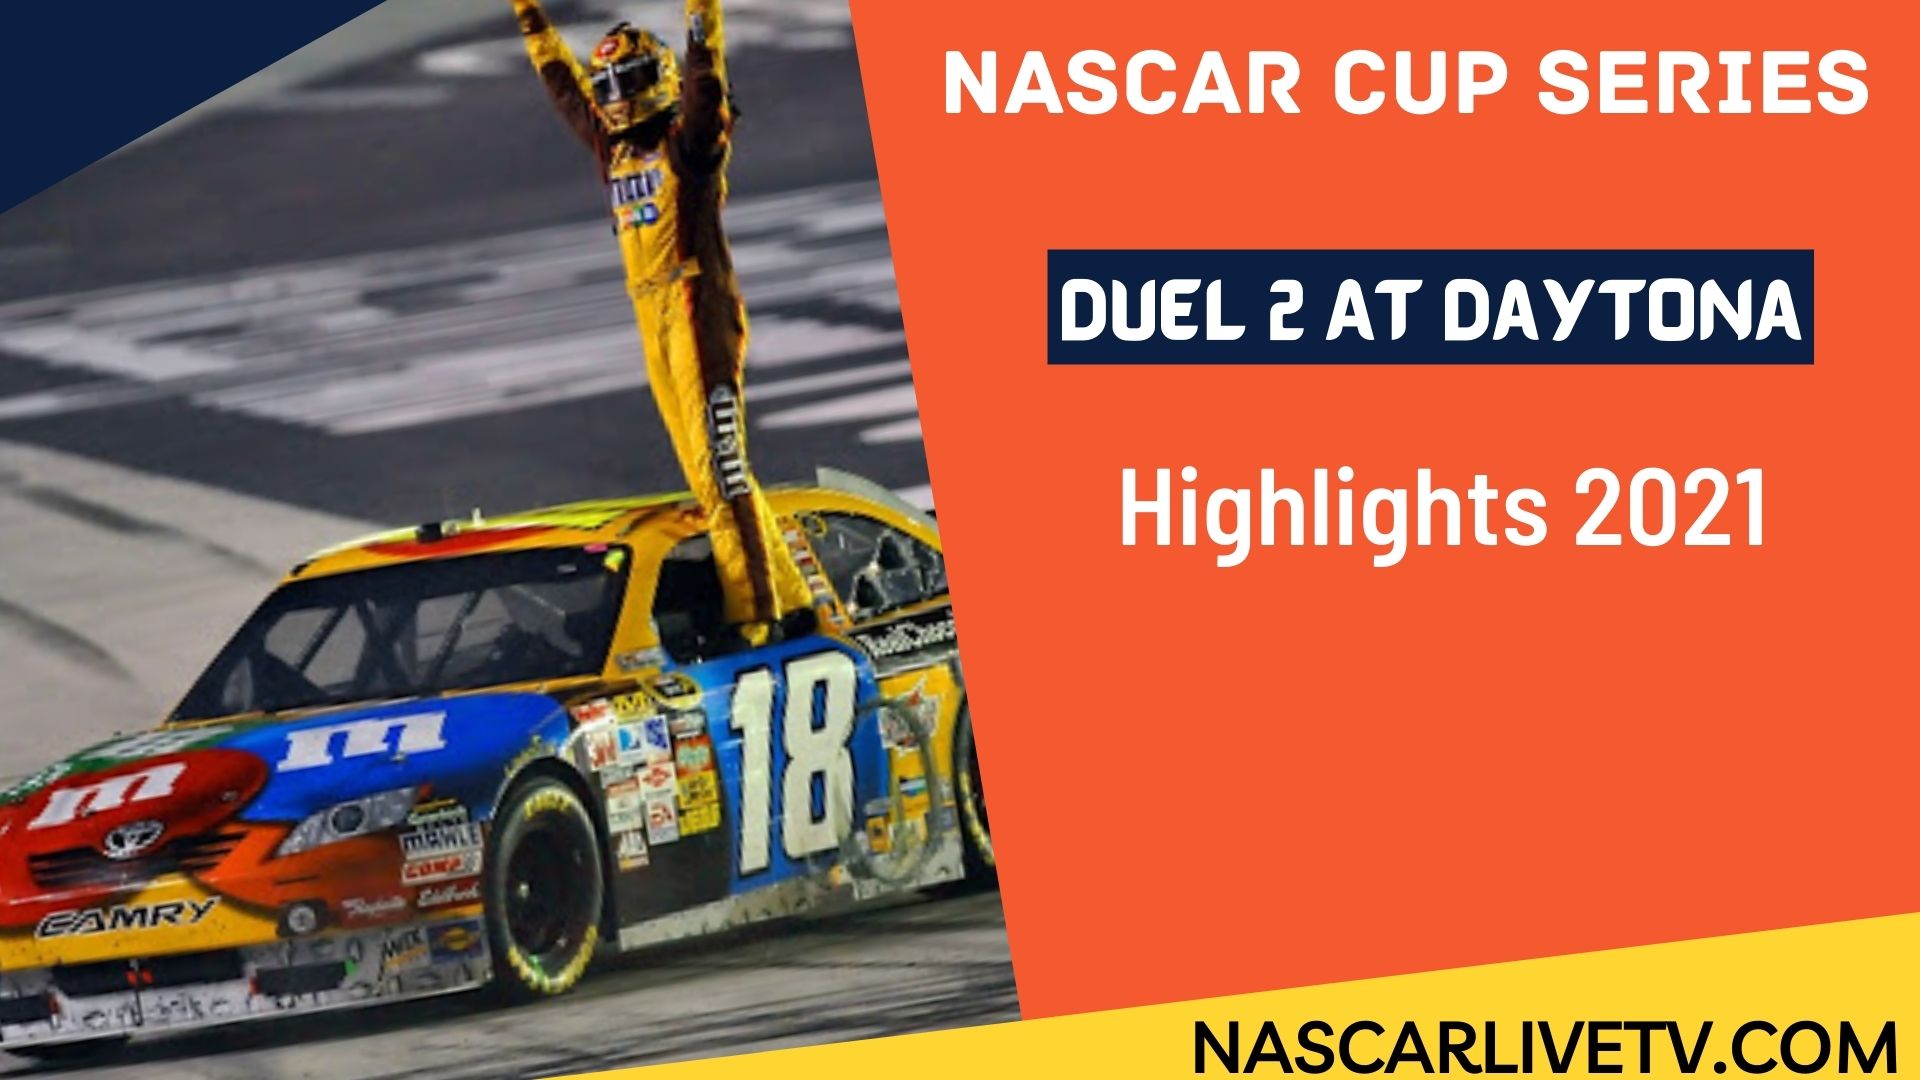 Duel 2 At Daytona NASCAR Cup Series Highlights 2021